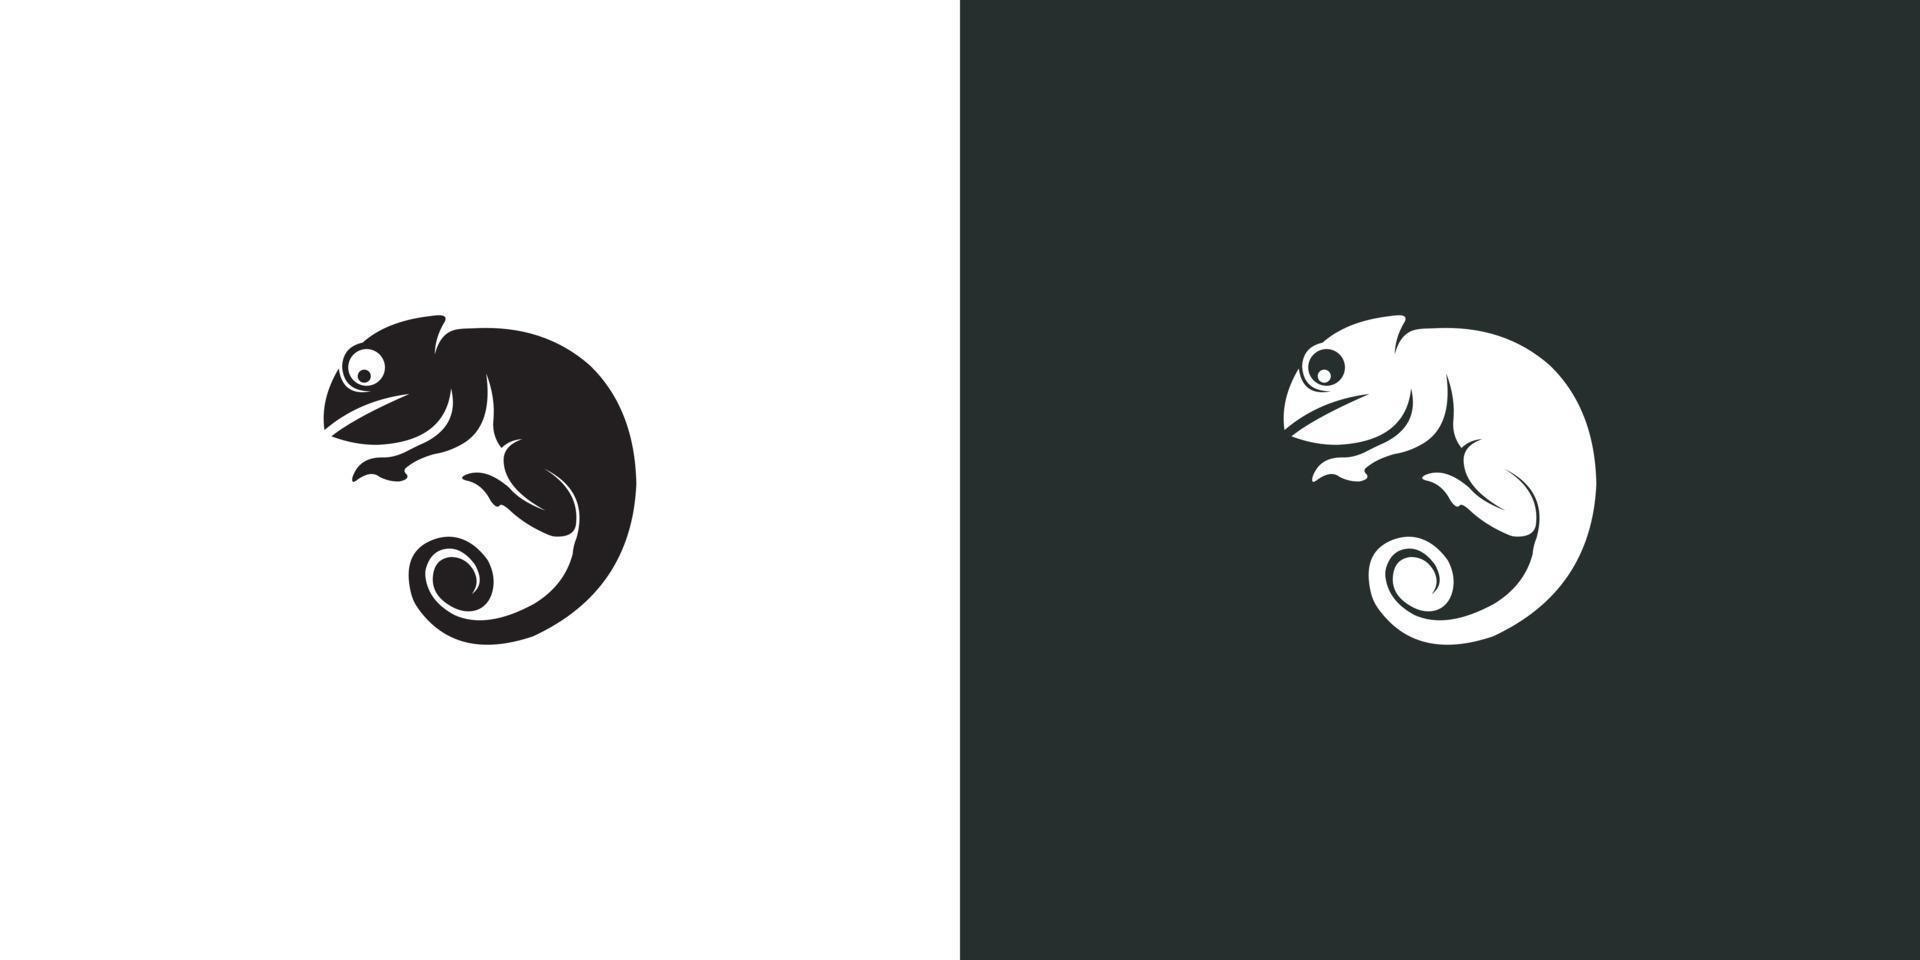 Chameleon silhouette animal logo design vector